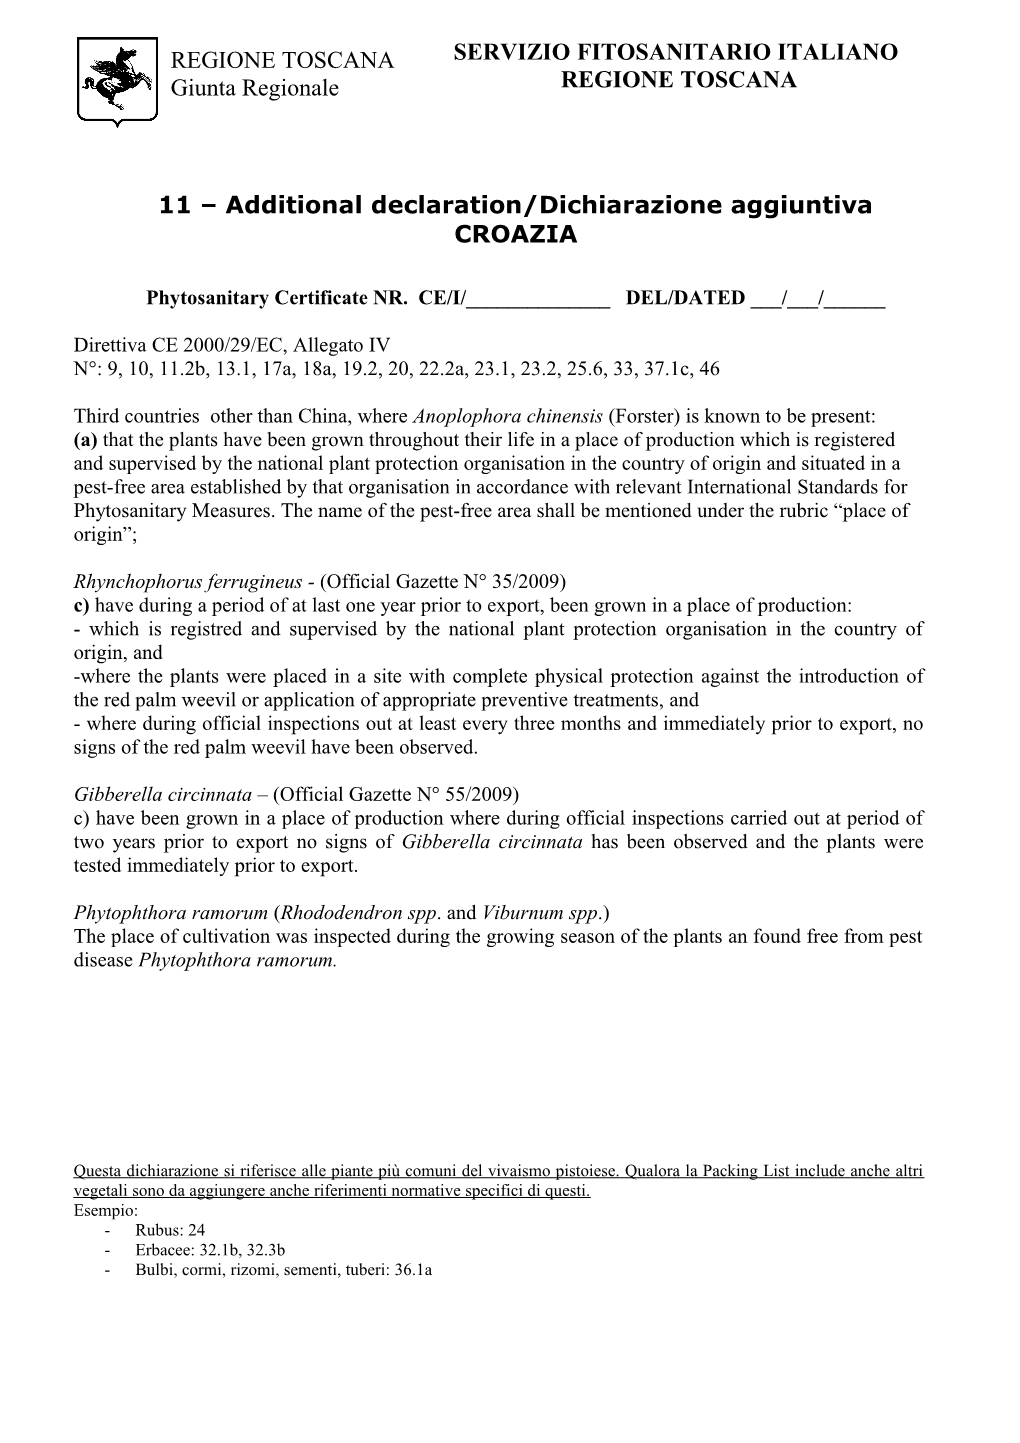 11 Additional Declaration/Dichiarazione Aggiuntiva